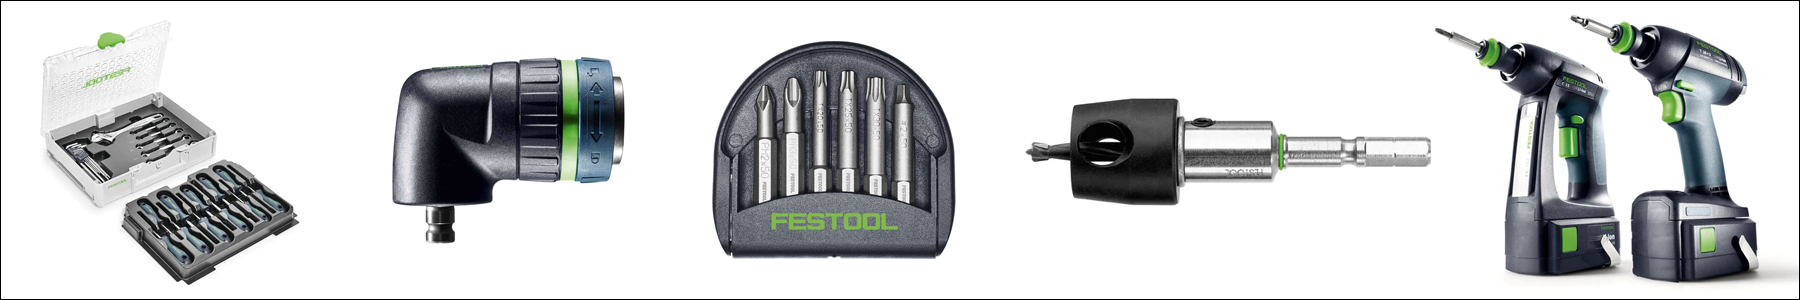 Festool Drill Accessories